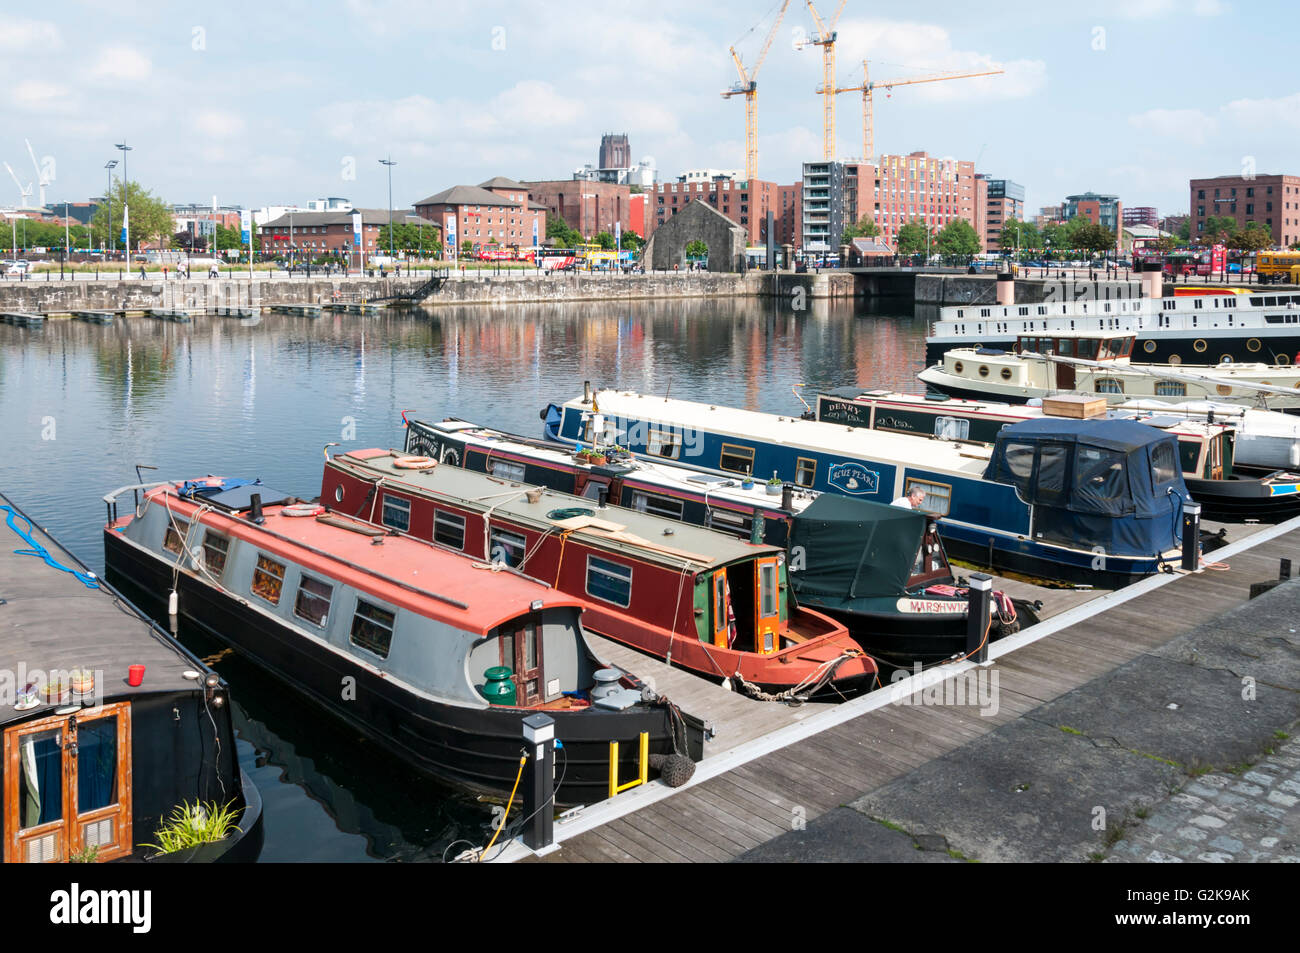 Canal narrowboats amarrés dans le Grade II Salthouse Dock, Liverpool. Banque D'Images